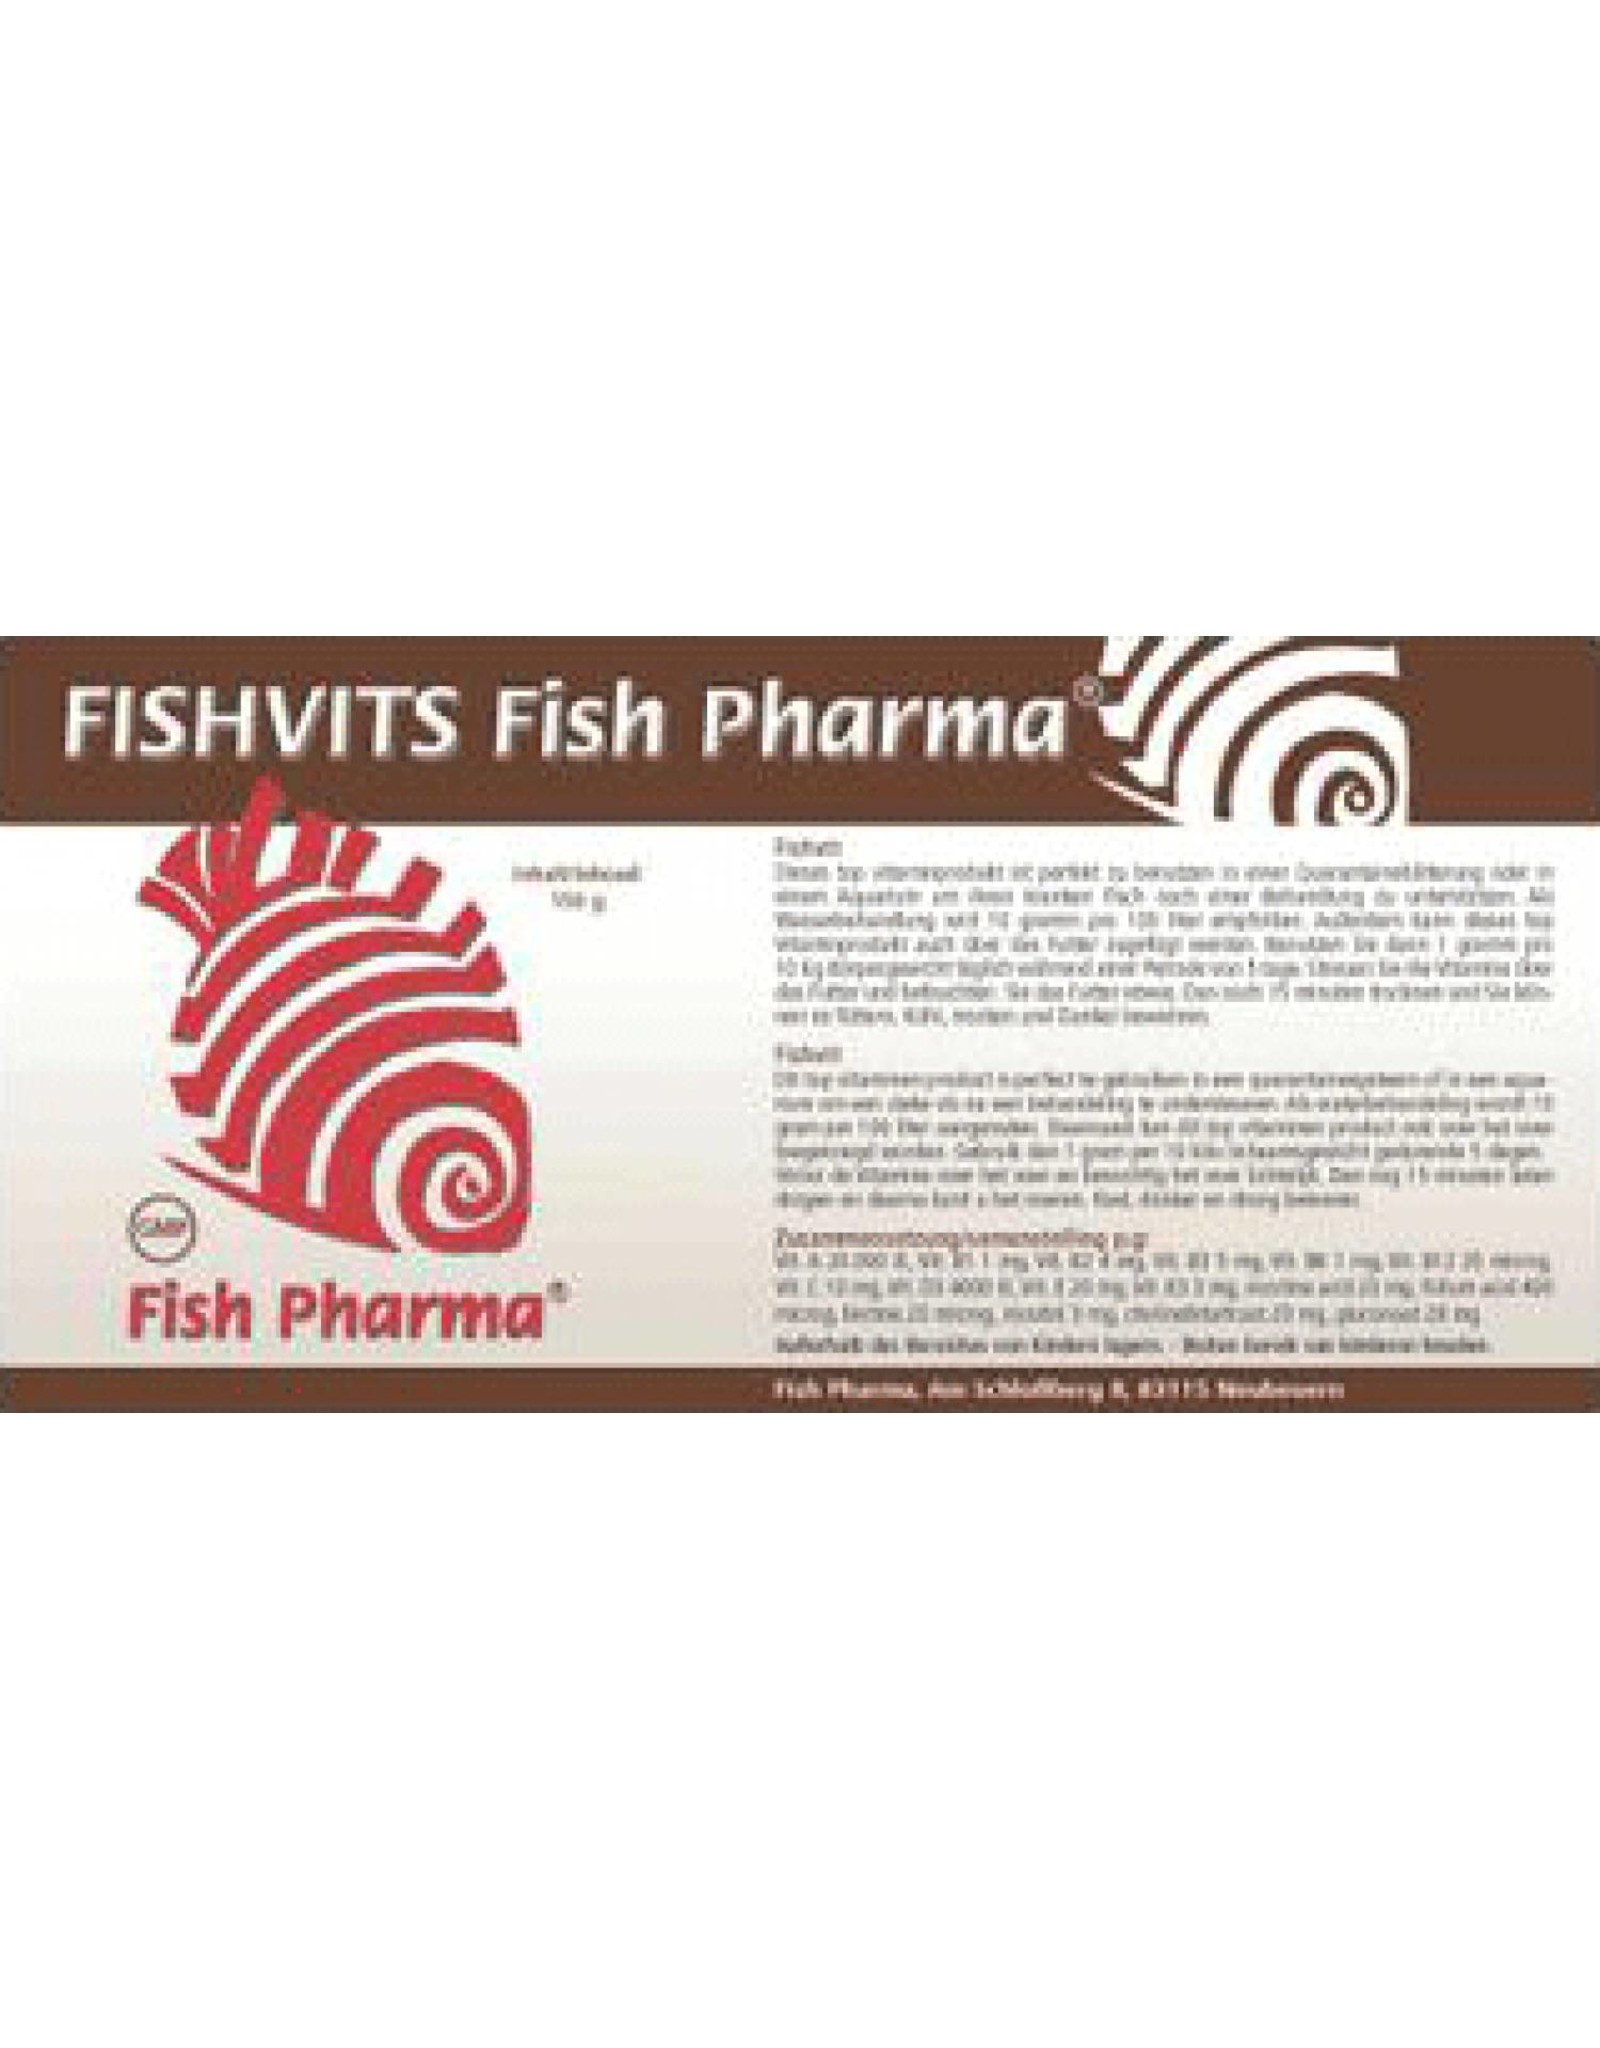 Fish Pharma Fishvits vitamins for fish.